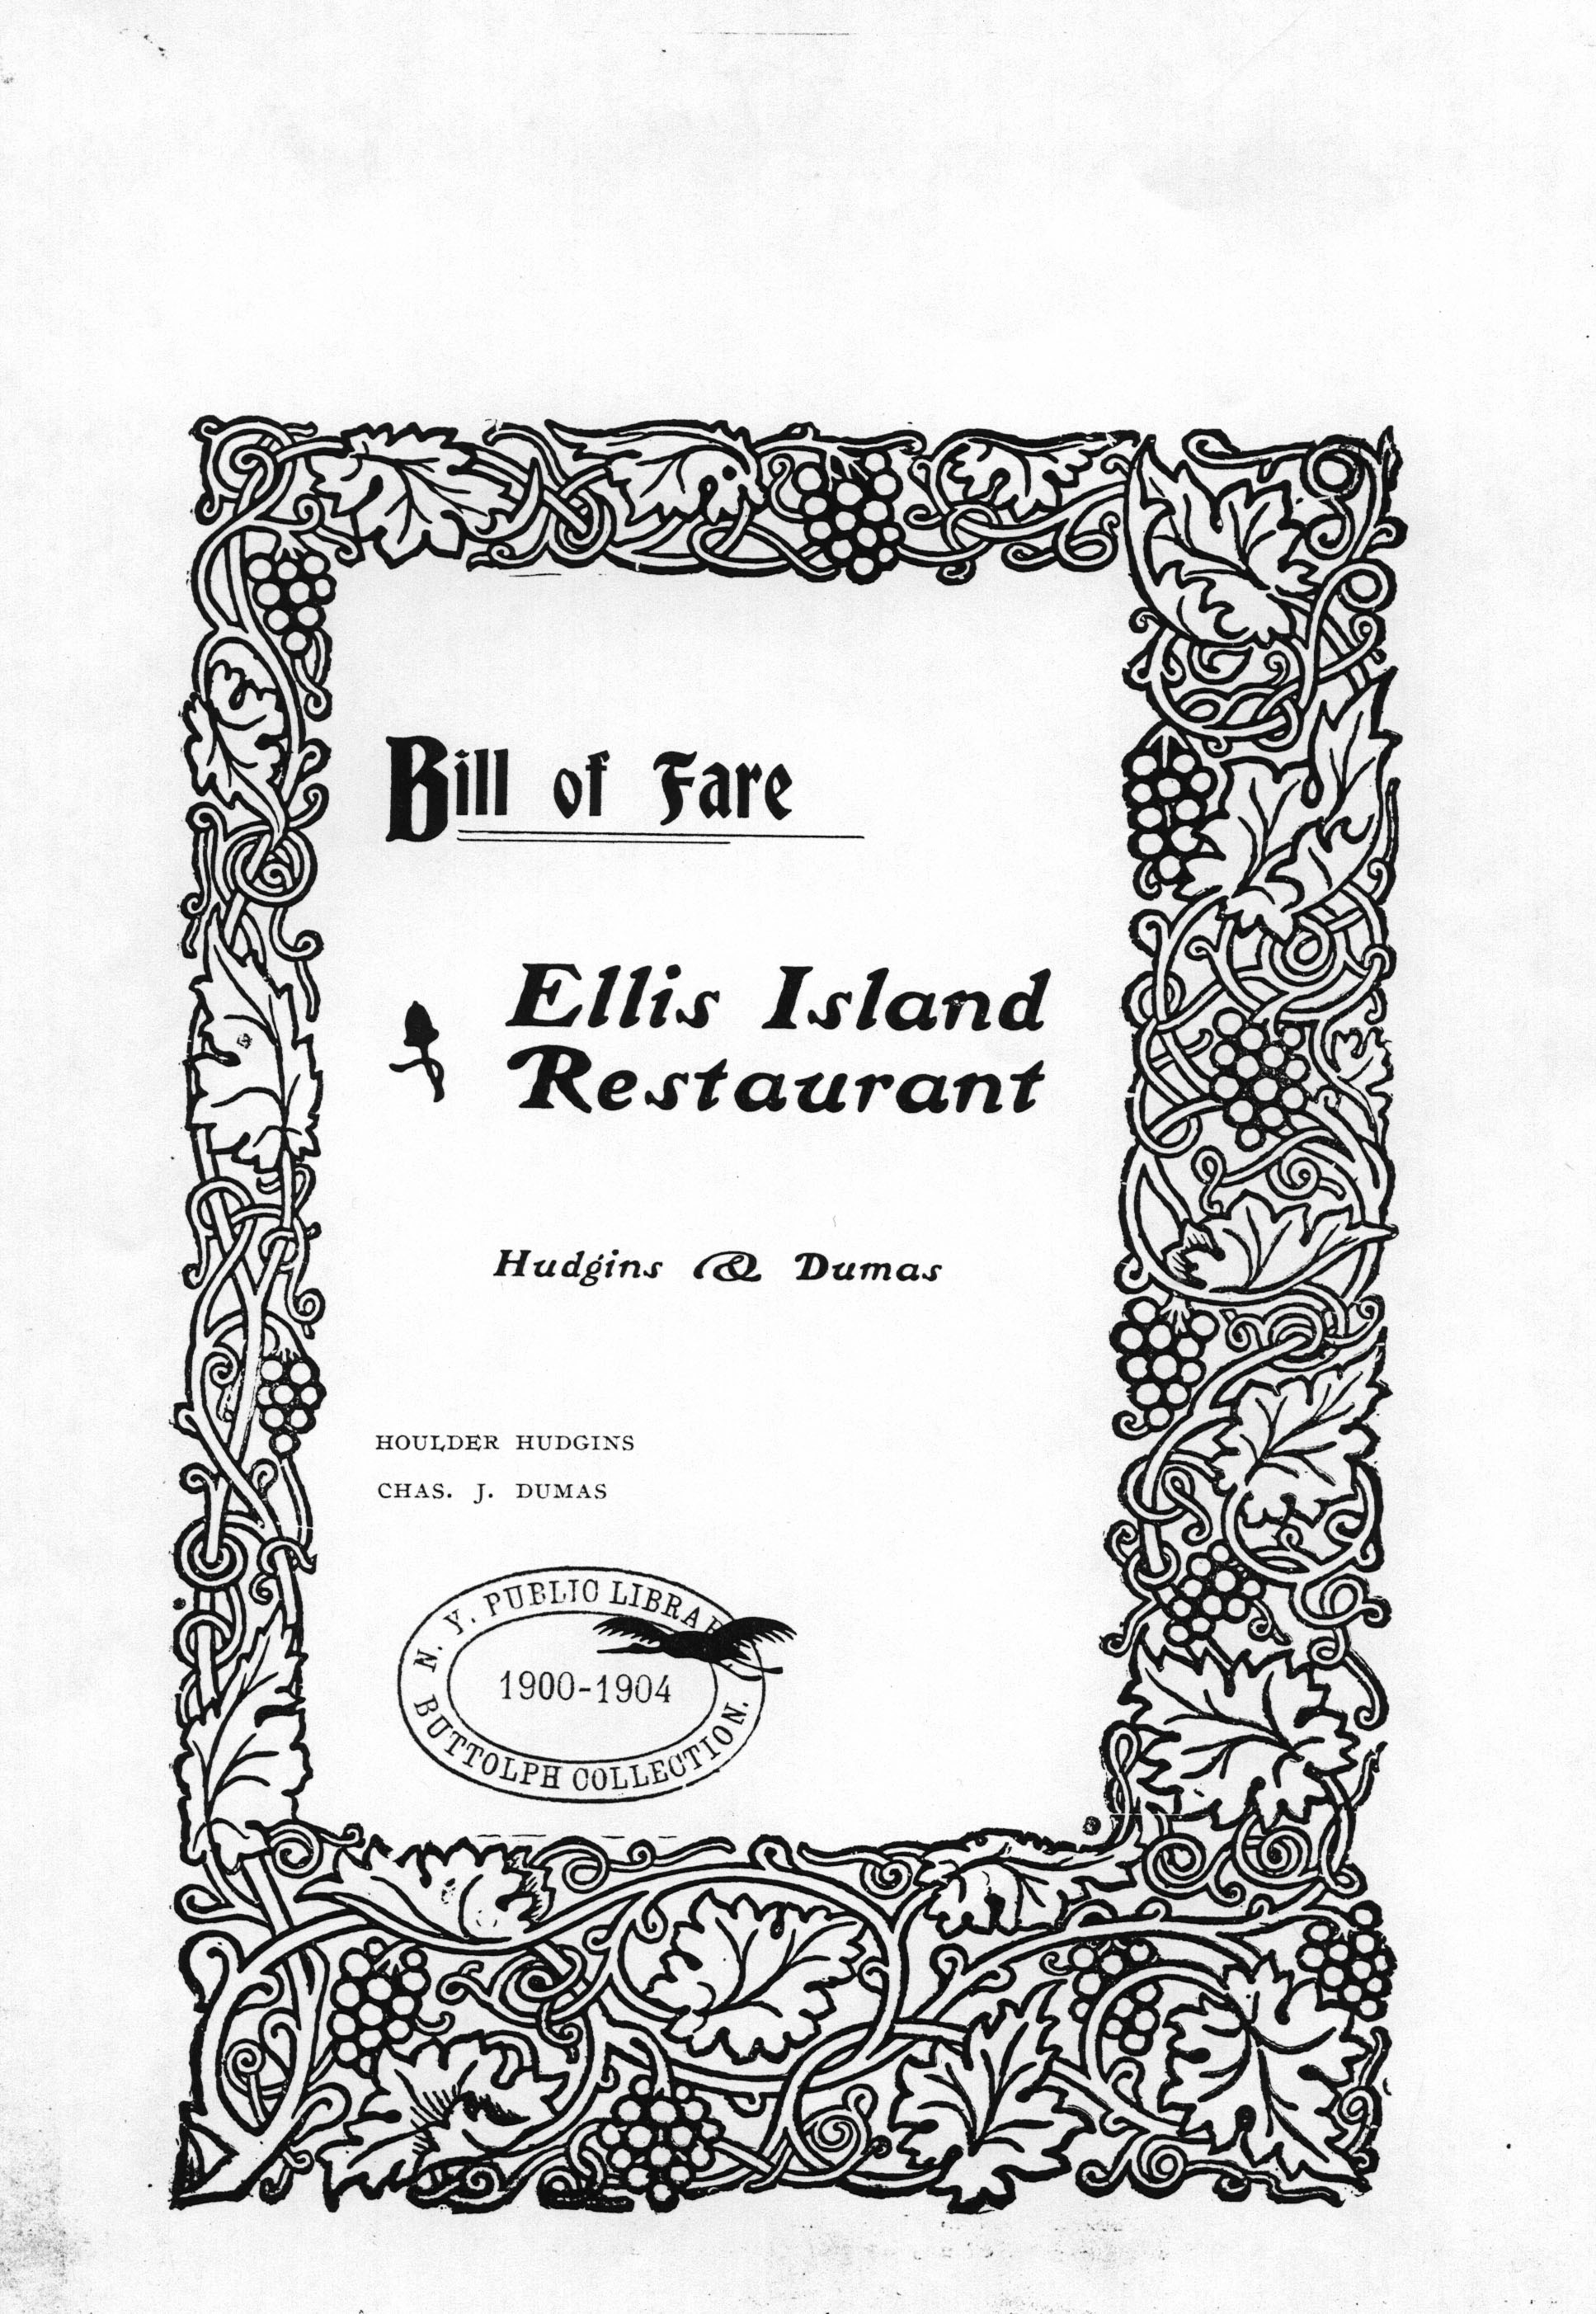 20120723-Ellis Island Restaurant Bill of fare.jpg